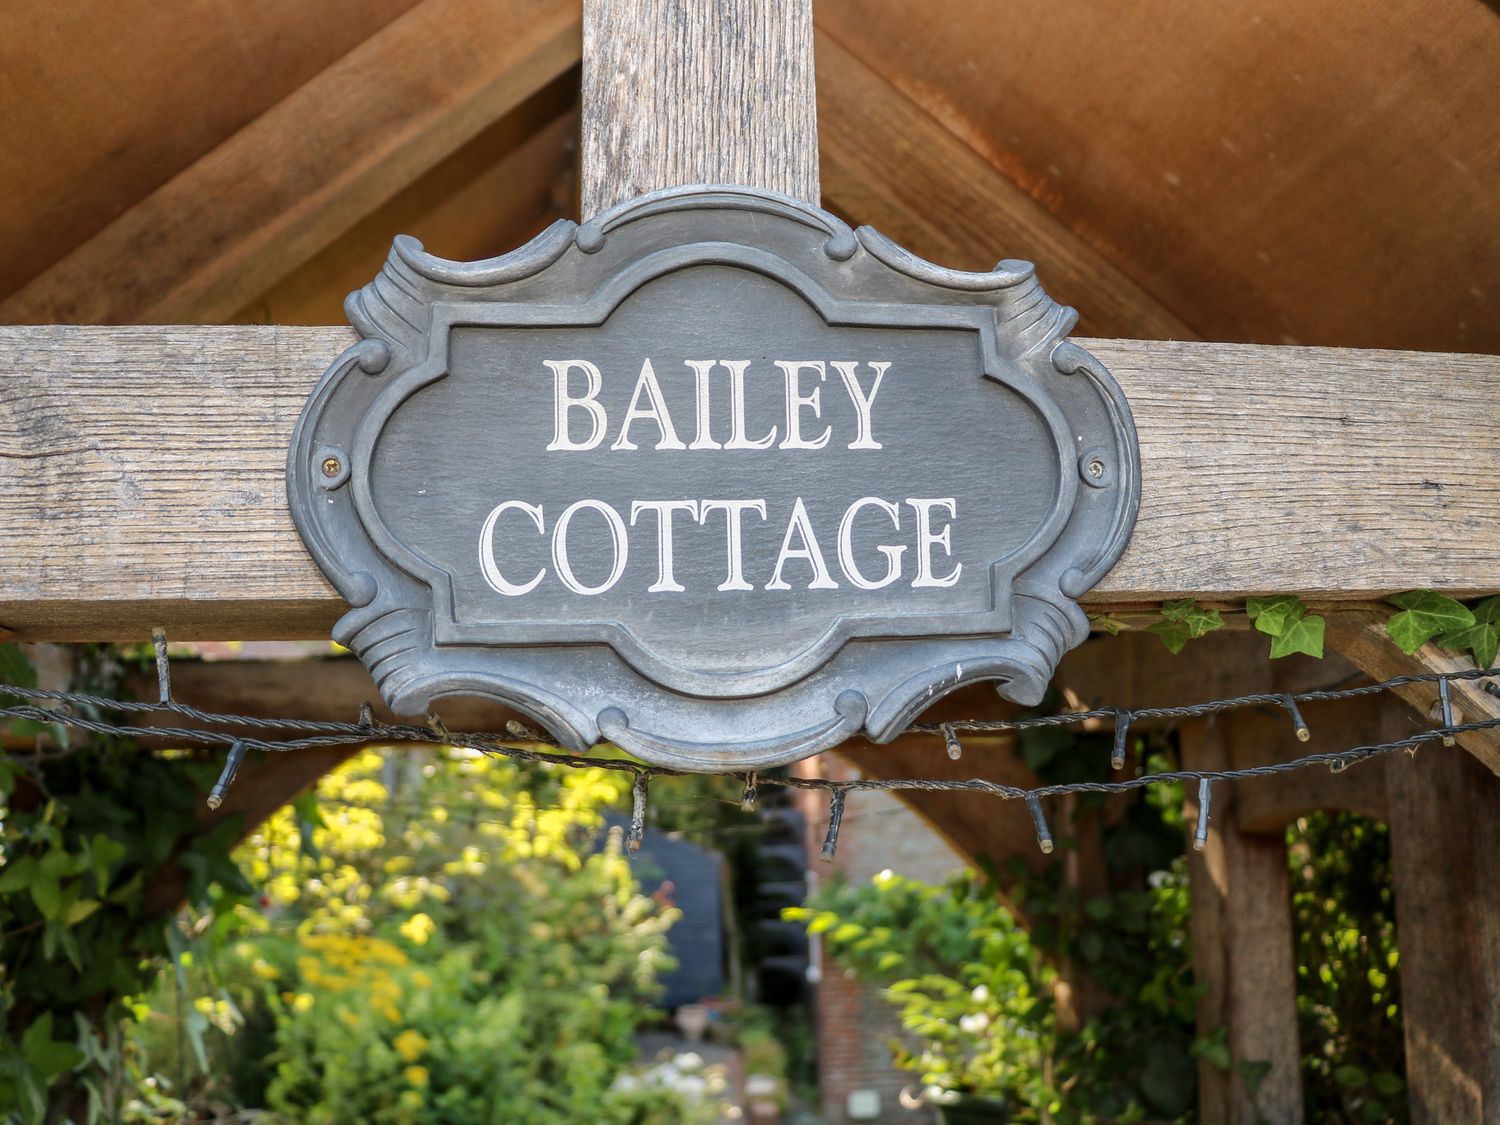 Bailey Cottage, Bursledon